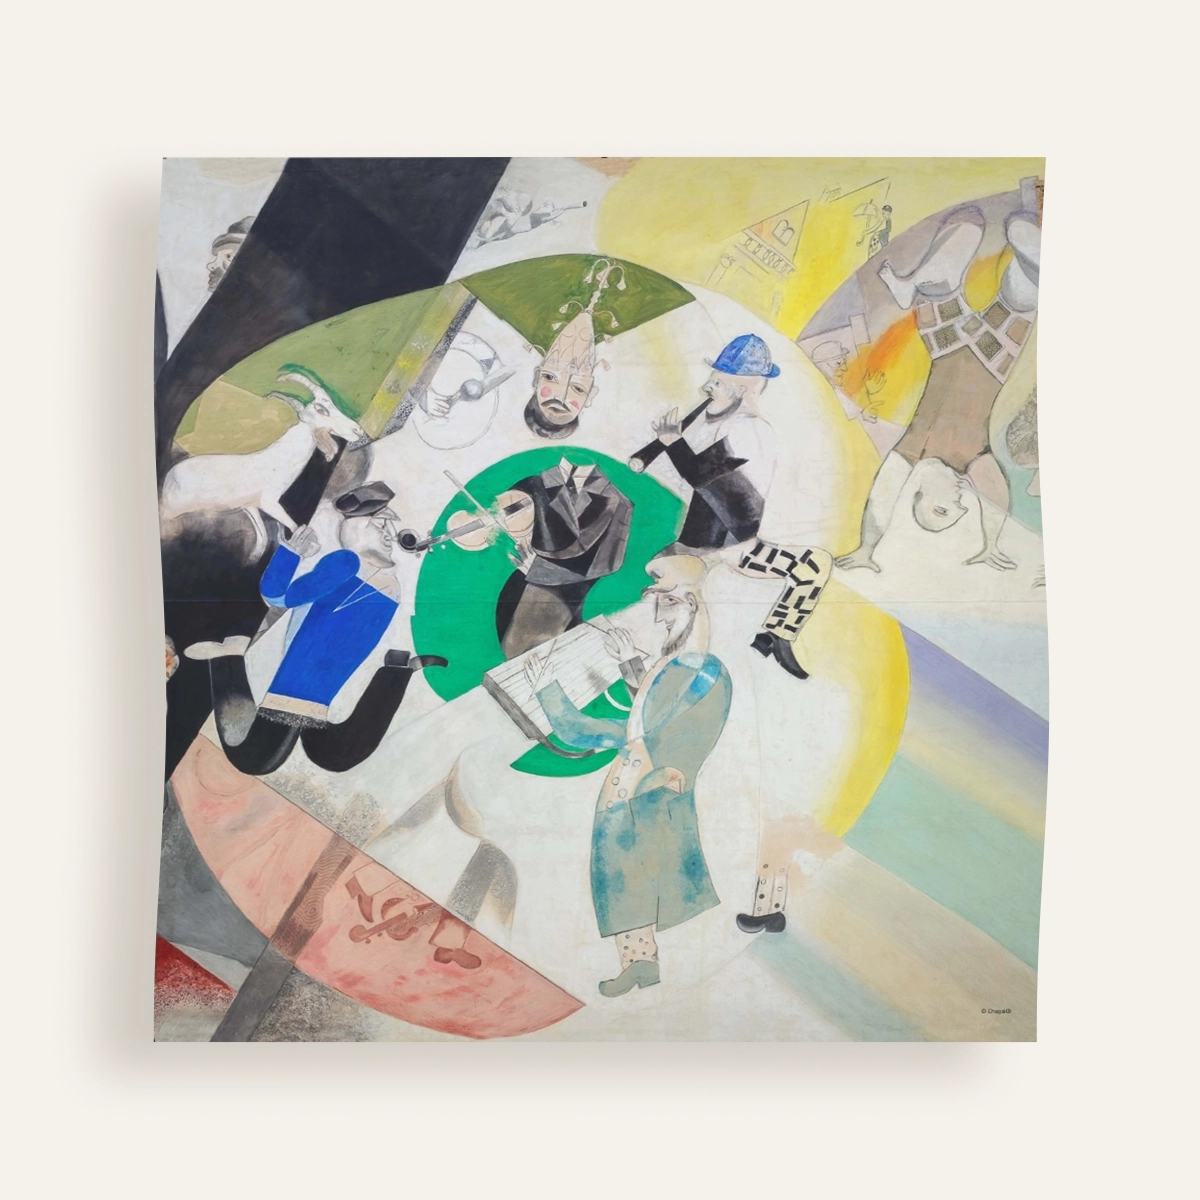 Carré 90 Chagall – Introduction au théâtre juif